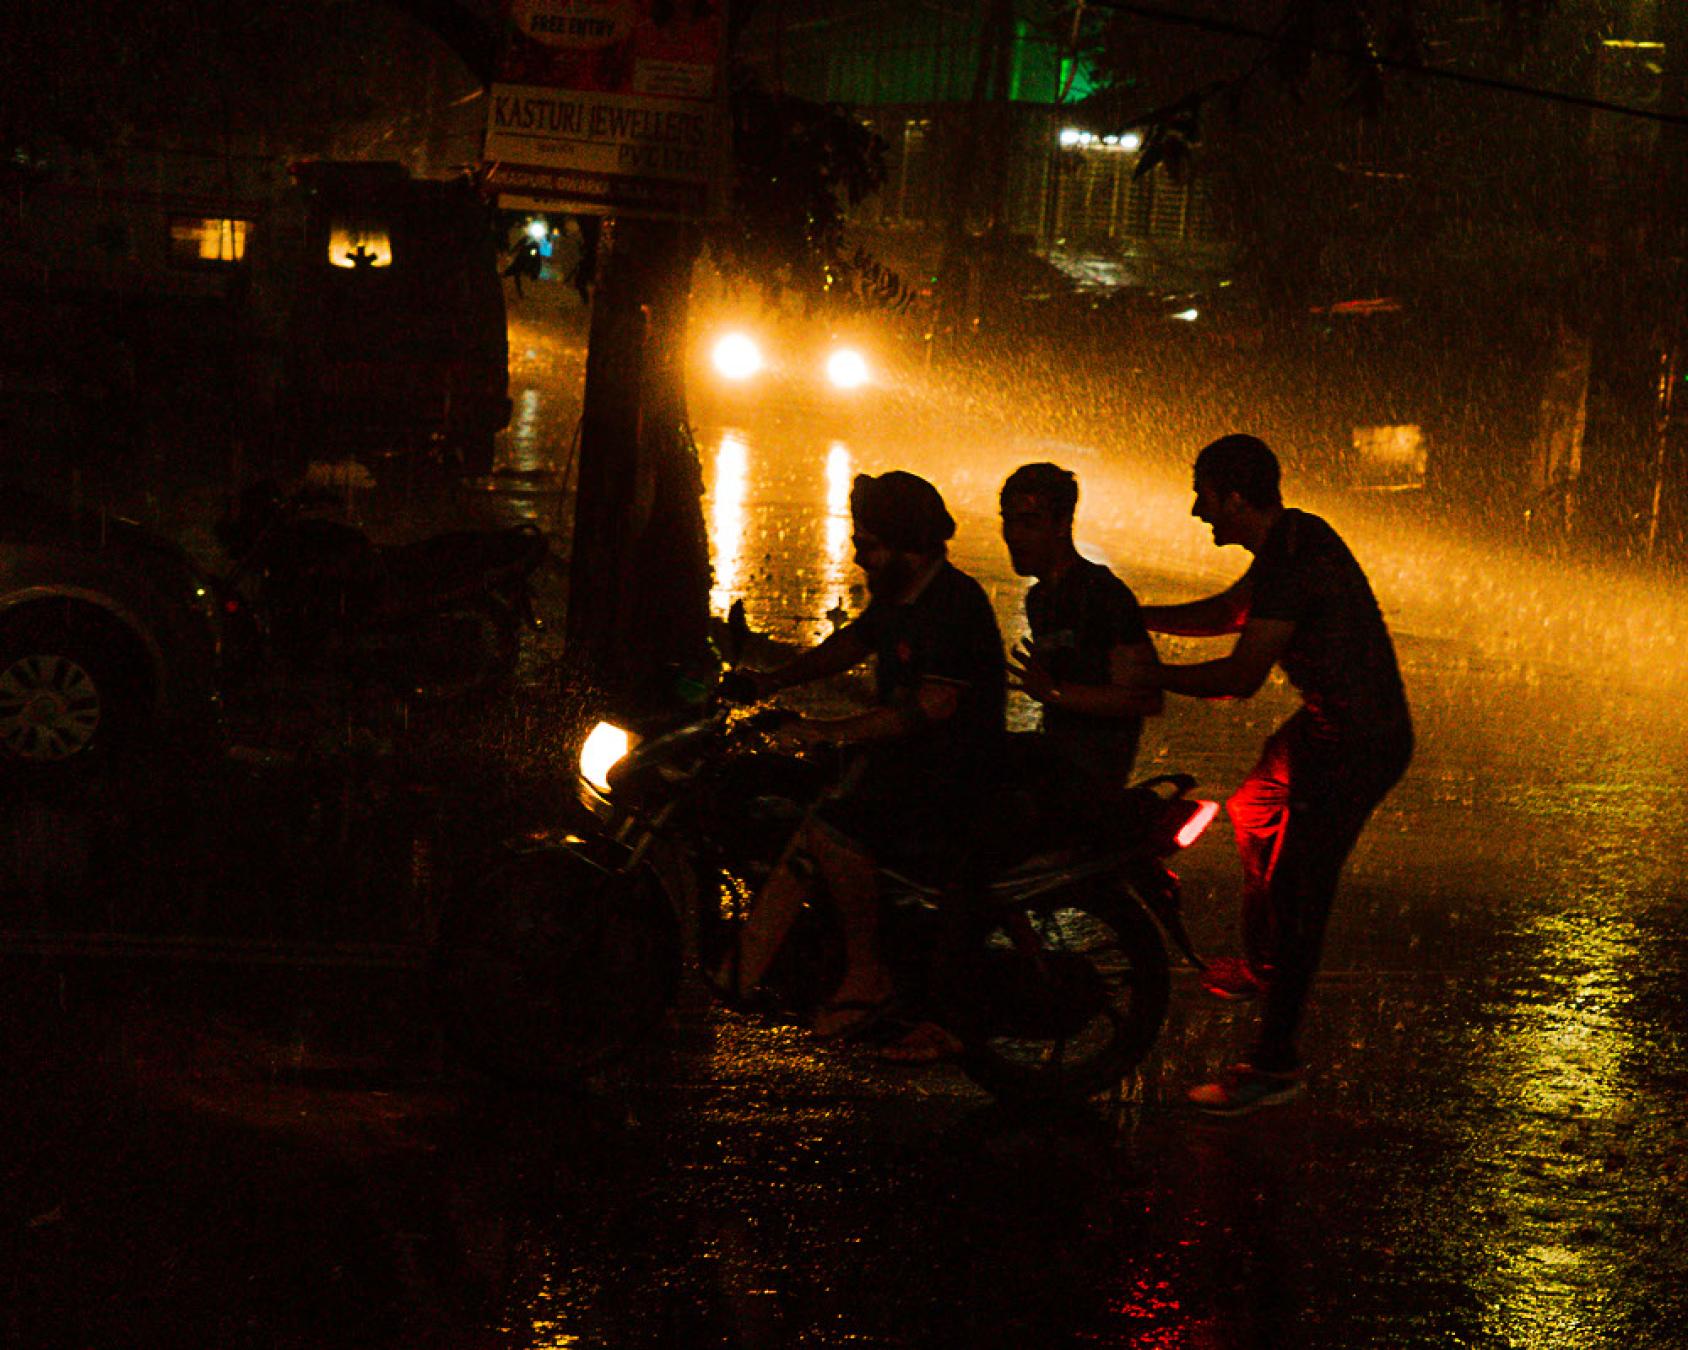 Трое людей смеются под дождем на улице ночью.